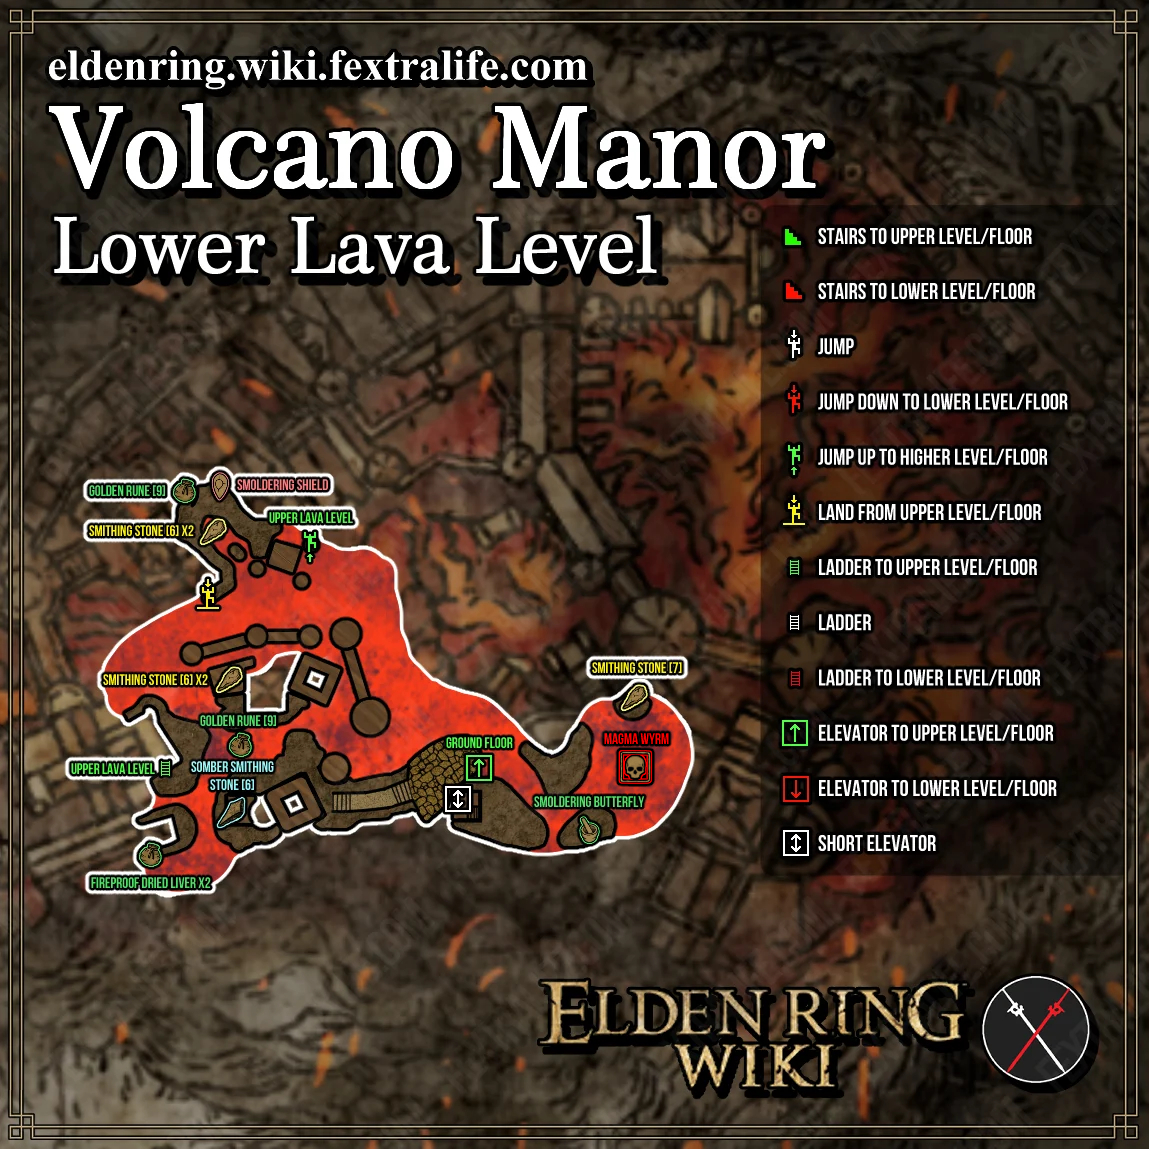 https://eldenring.wiki.fextralife.com/file/Elden-Ring/volcano_manor_lower_lava_level_dungeon_map_elden_ring_wiki_guide__1149px.jpg?v=1668564505891